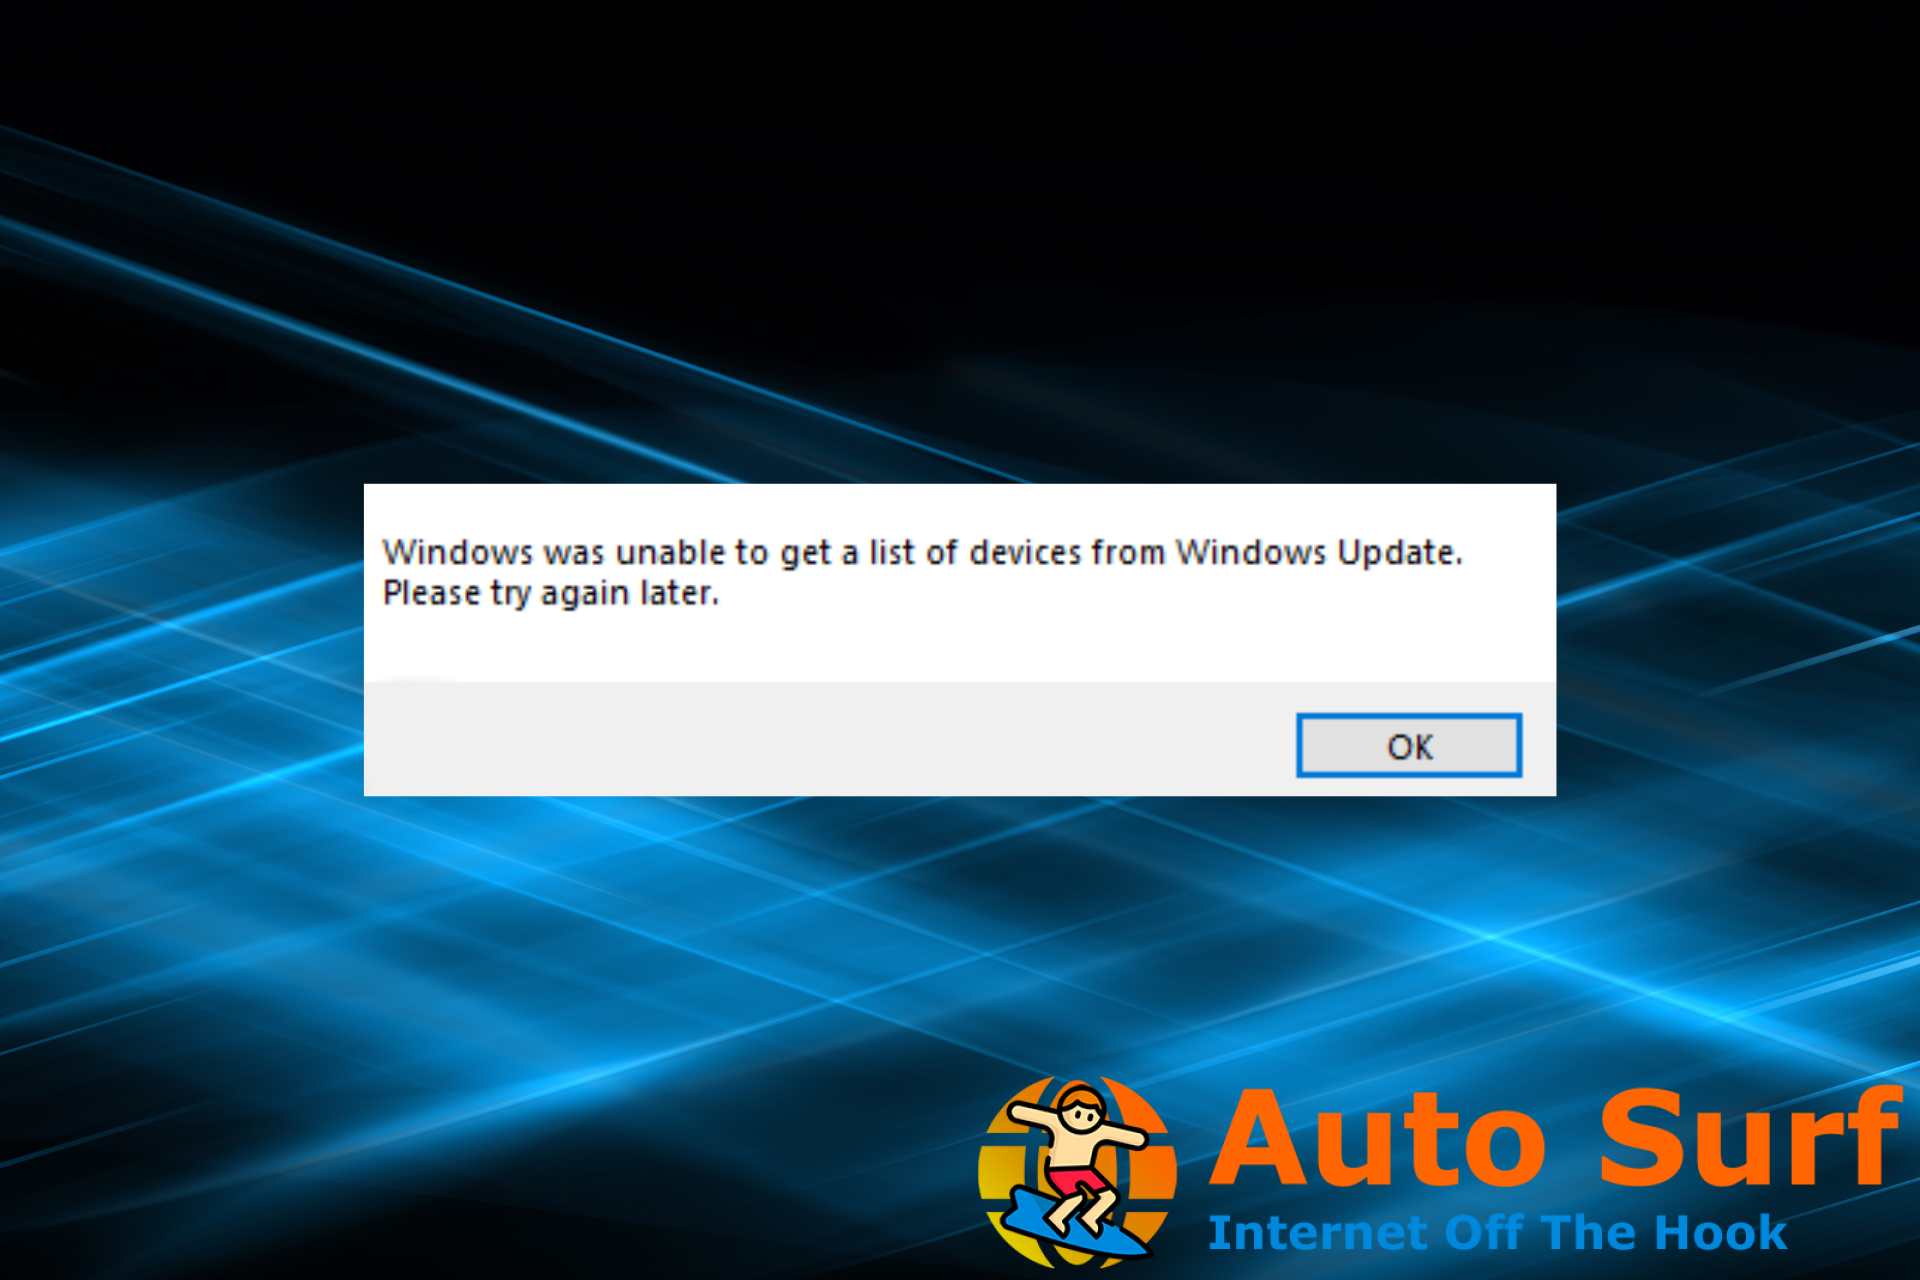 reparar Windows no pudo obtener una lista de dispositivos del error de actualización de Windows al instalar la impresora